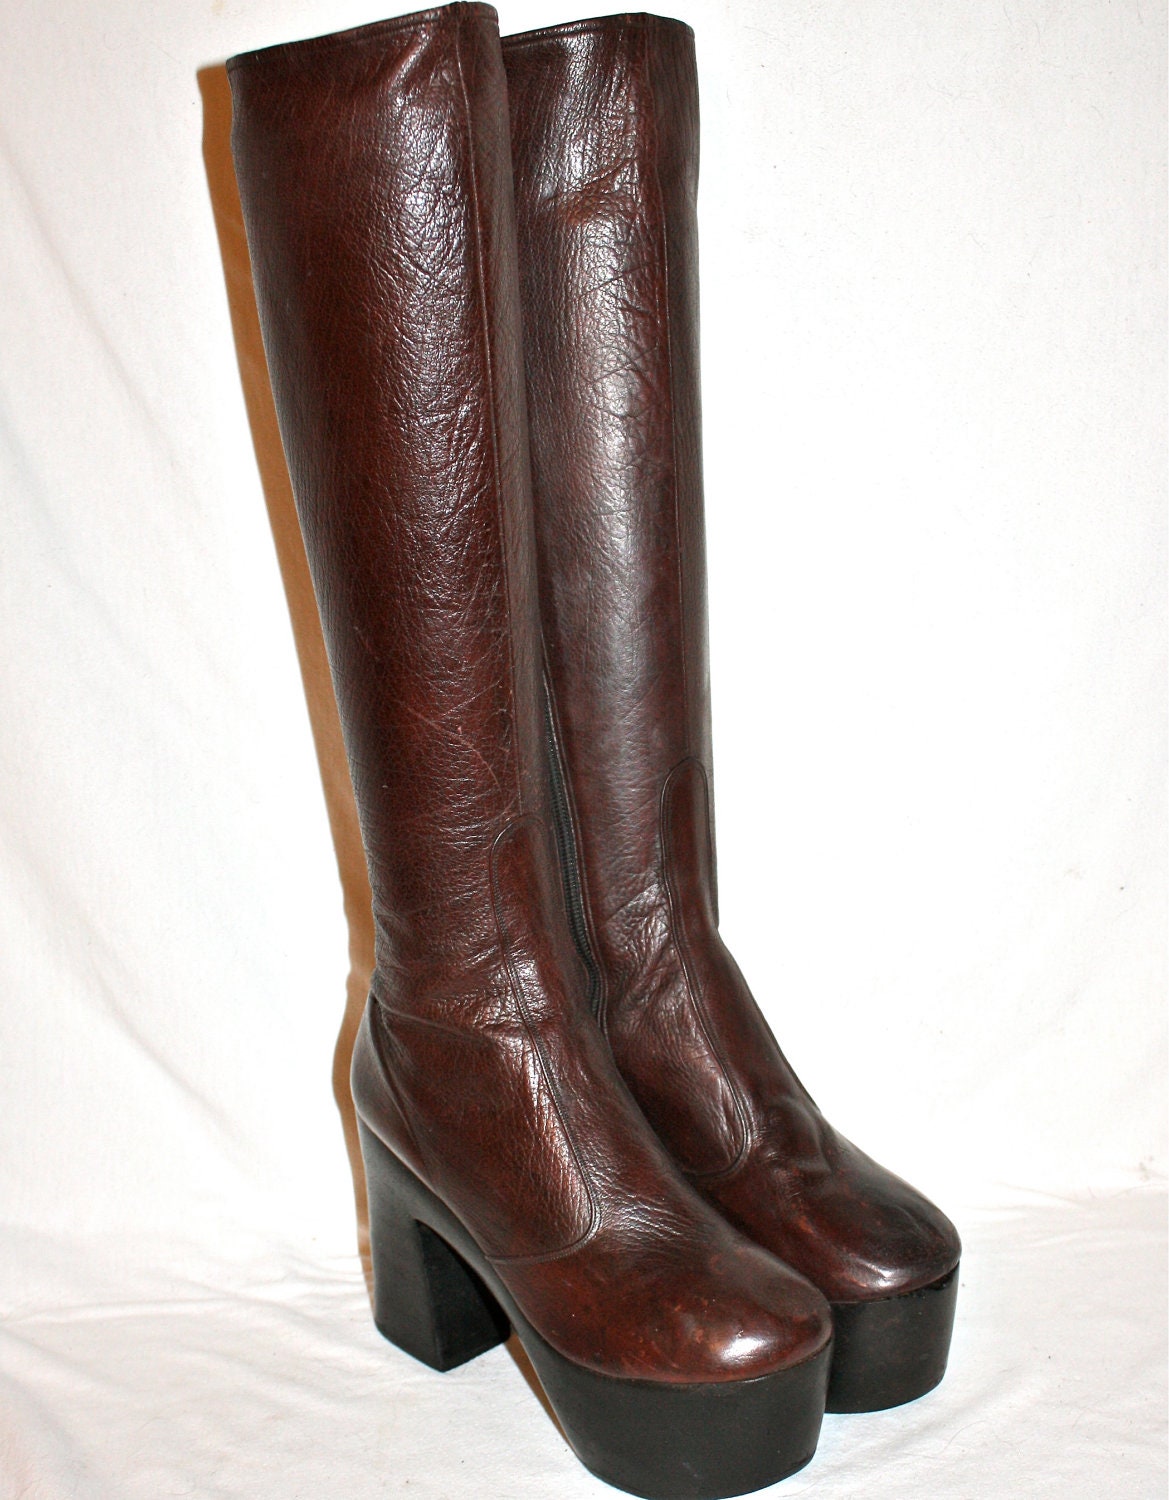 Vintage 70's PLATFORM Boots Plum Leather Wood Sole